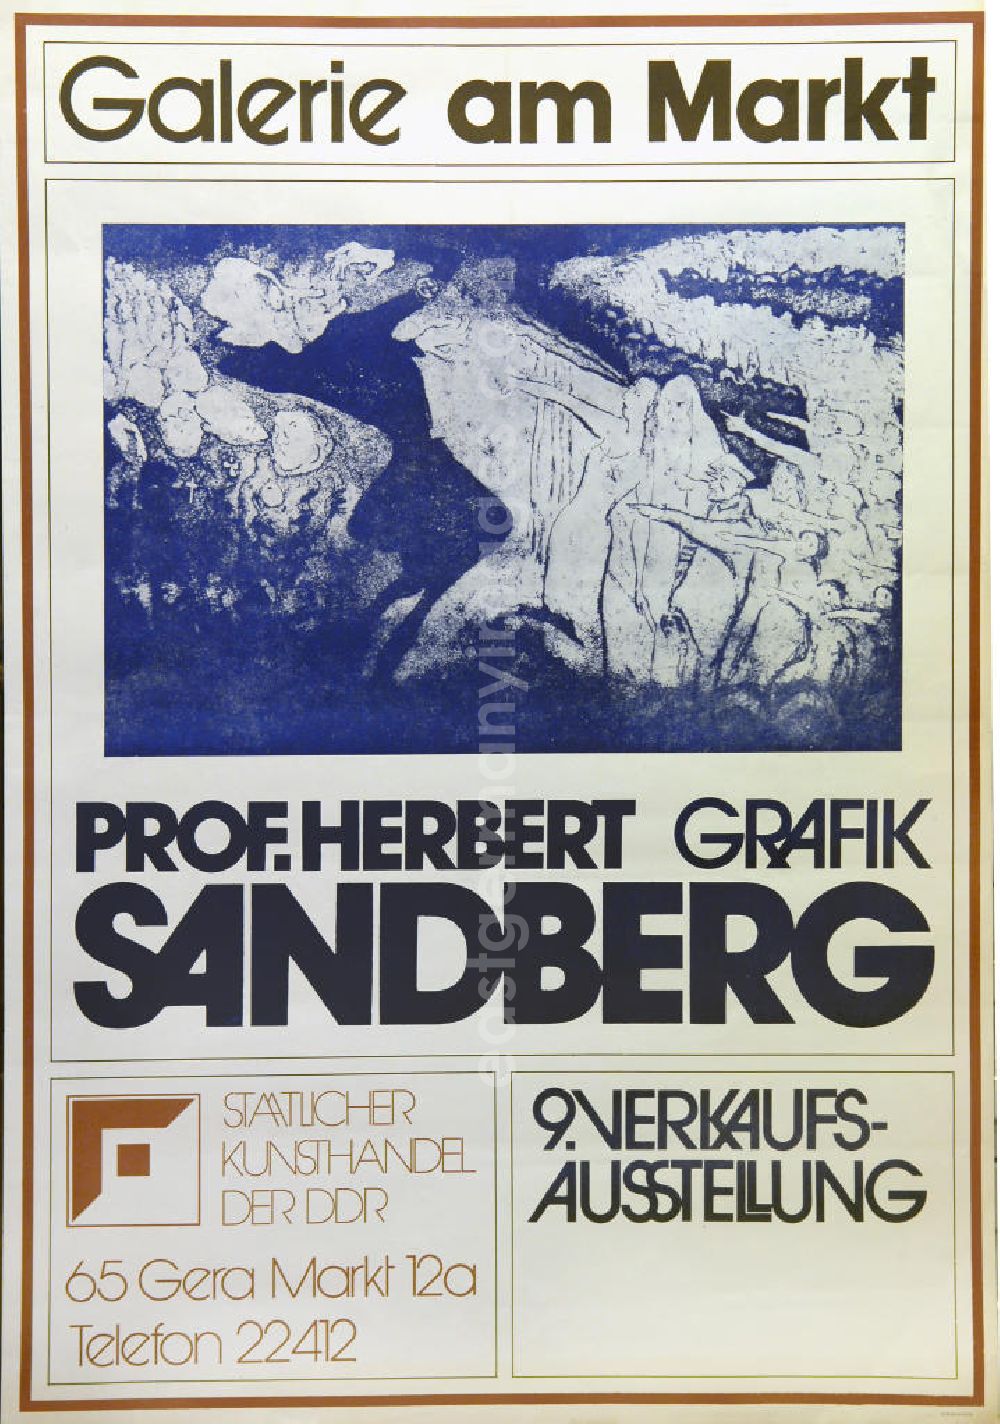 GDR picture archive: Berlin - Plakat der Ausstellung Prof. Herbert Sandberg Grafik 1977 Galerie am Markt, 57,6x81,4cm mit der Grafik Eichmann und die Eichmänner von Herbert Sandberg aus dem Jahr 196